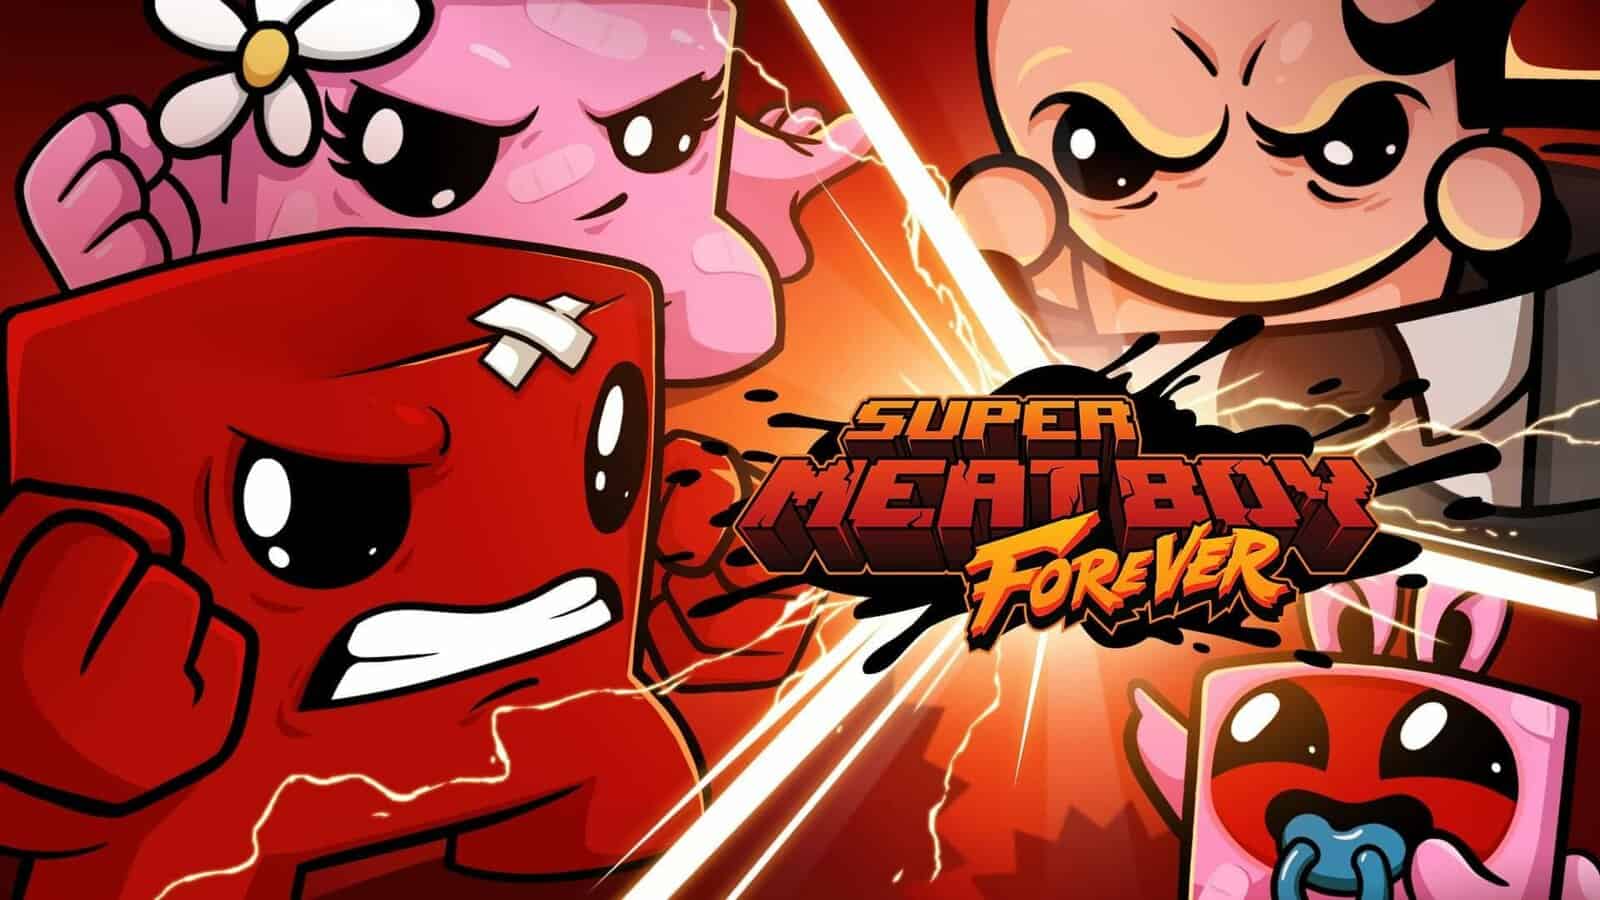 Super Meat Boy Forever выйдет на мобильных в 2022-м году